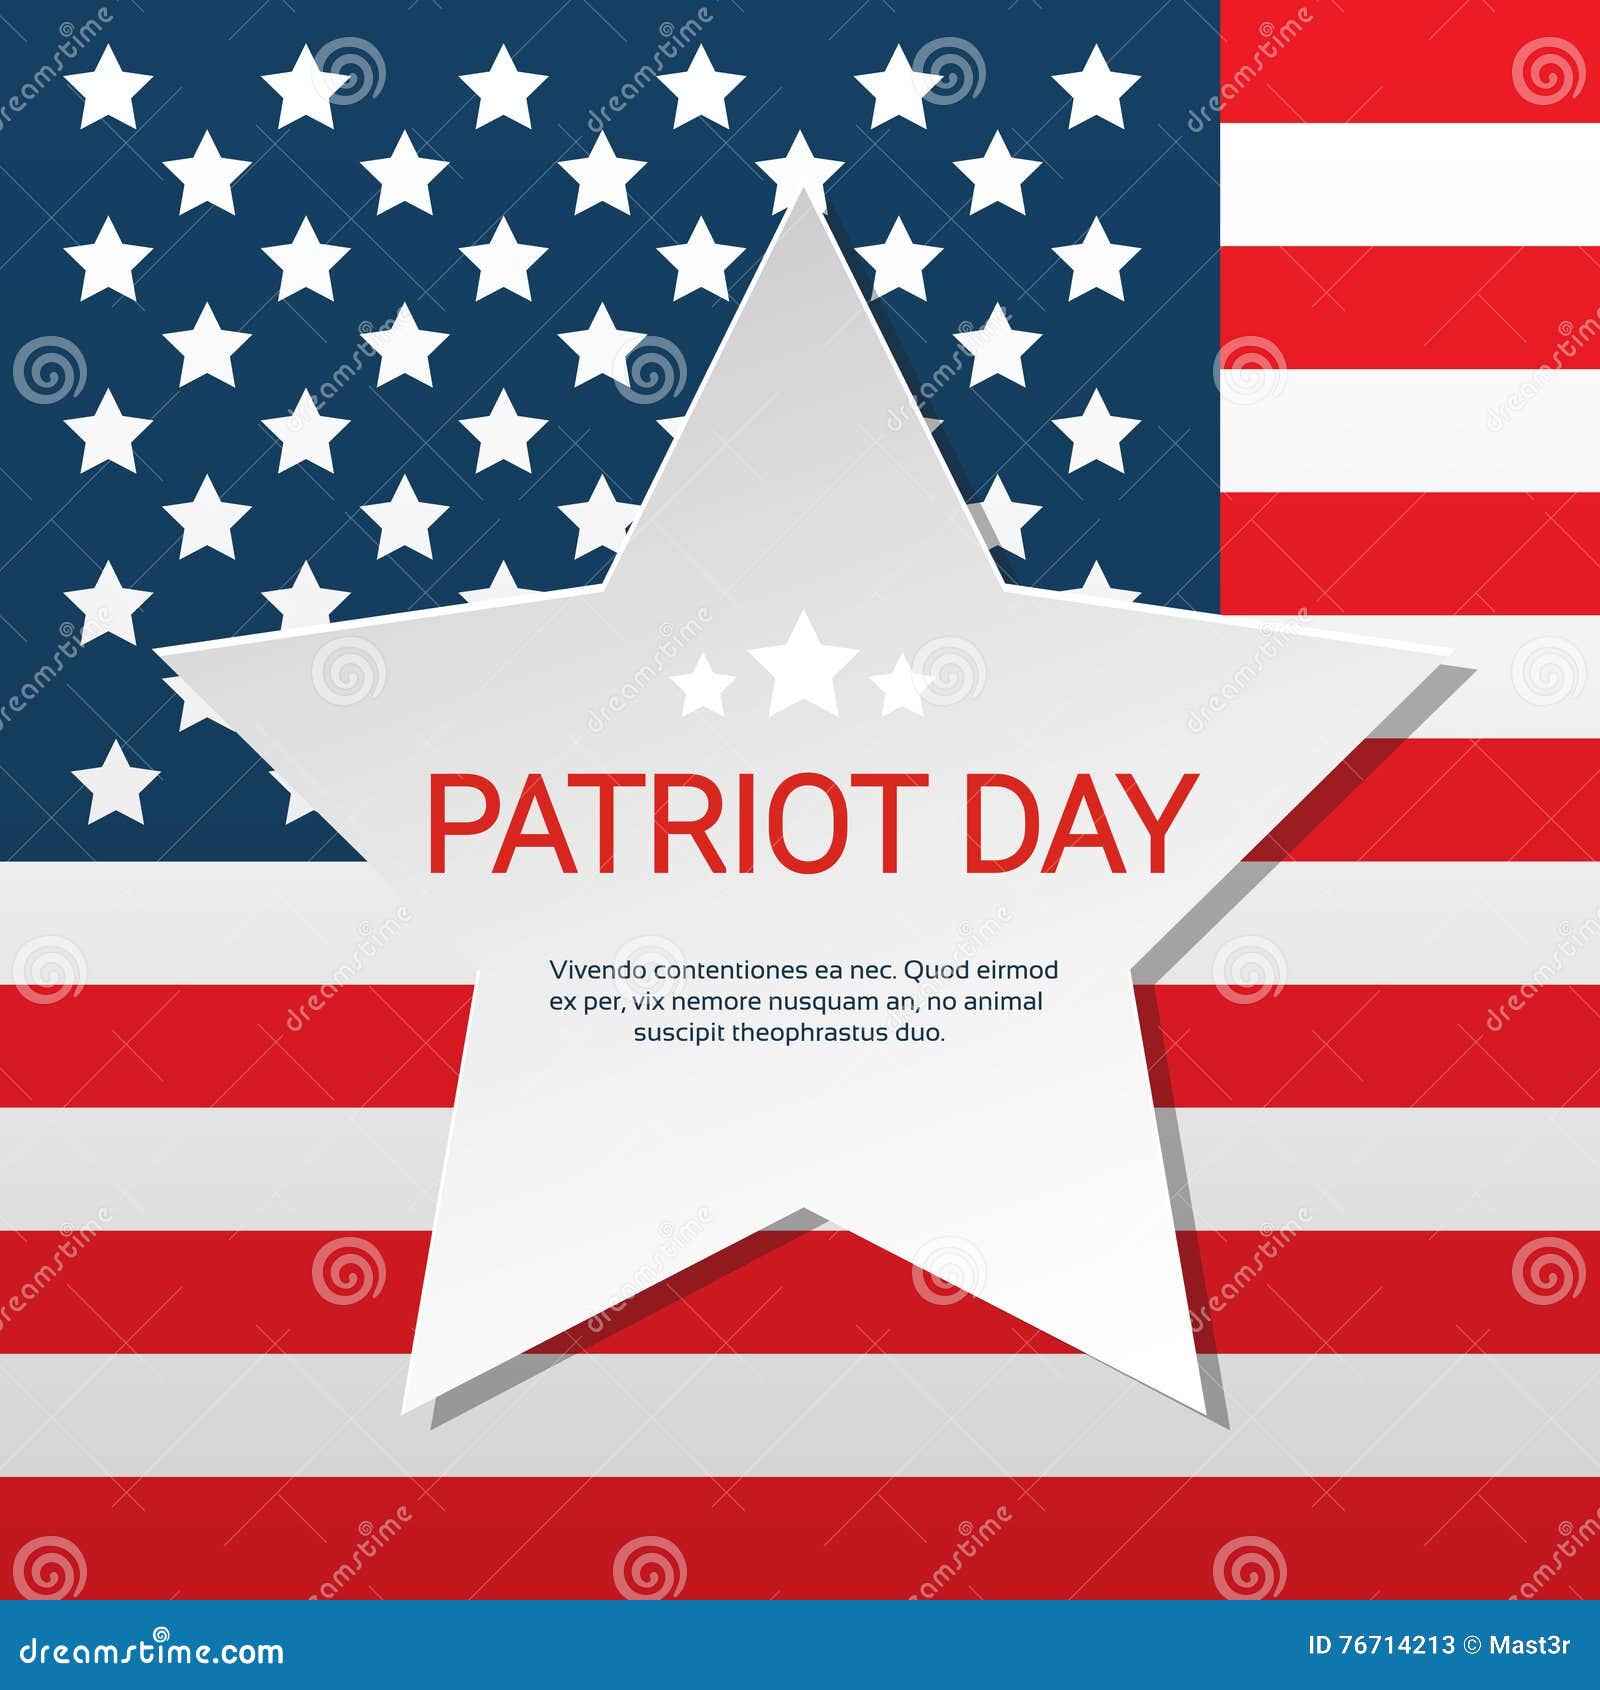 Стоимость патриота американского. День патриота в США. Флаг патриотов США. Патриот США. Баннер с американскими звездами.